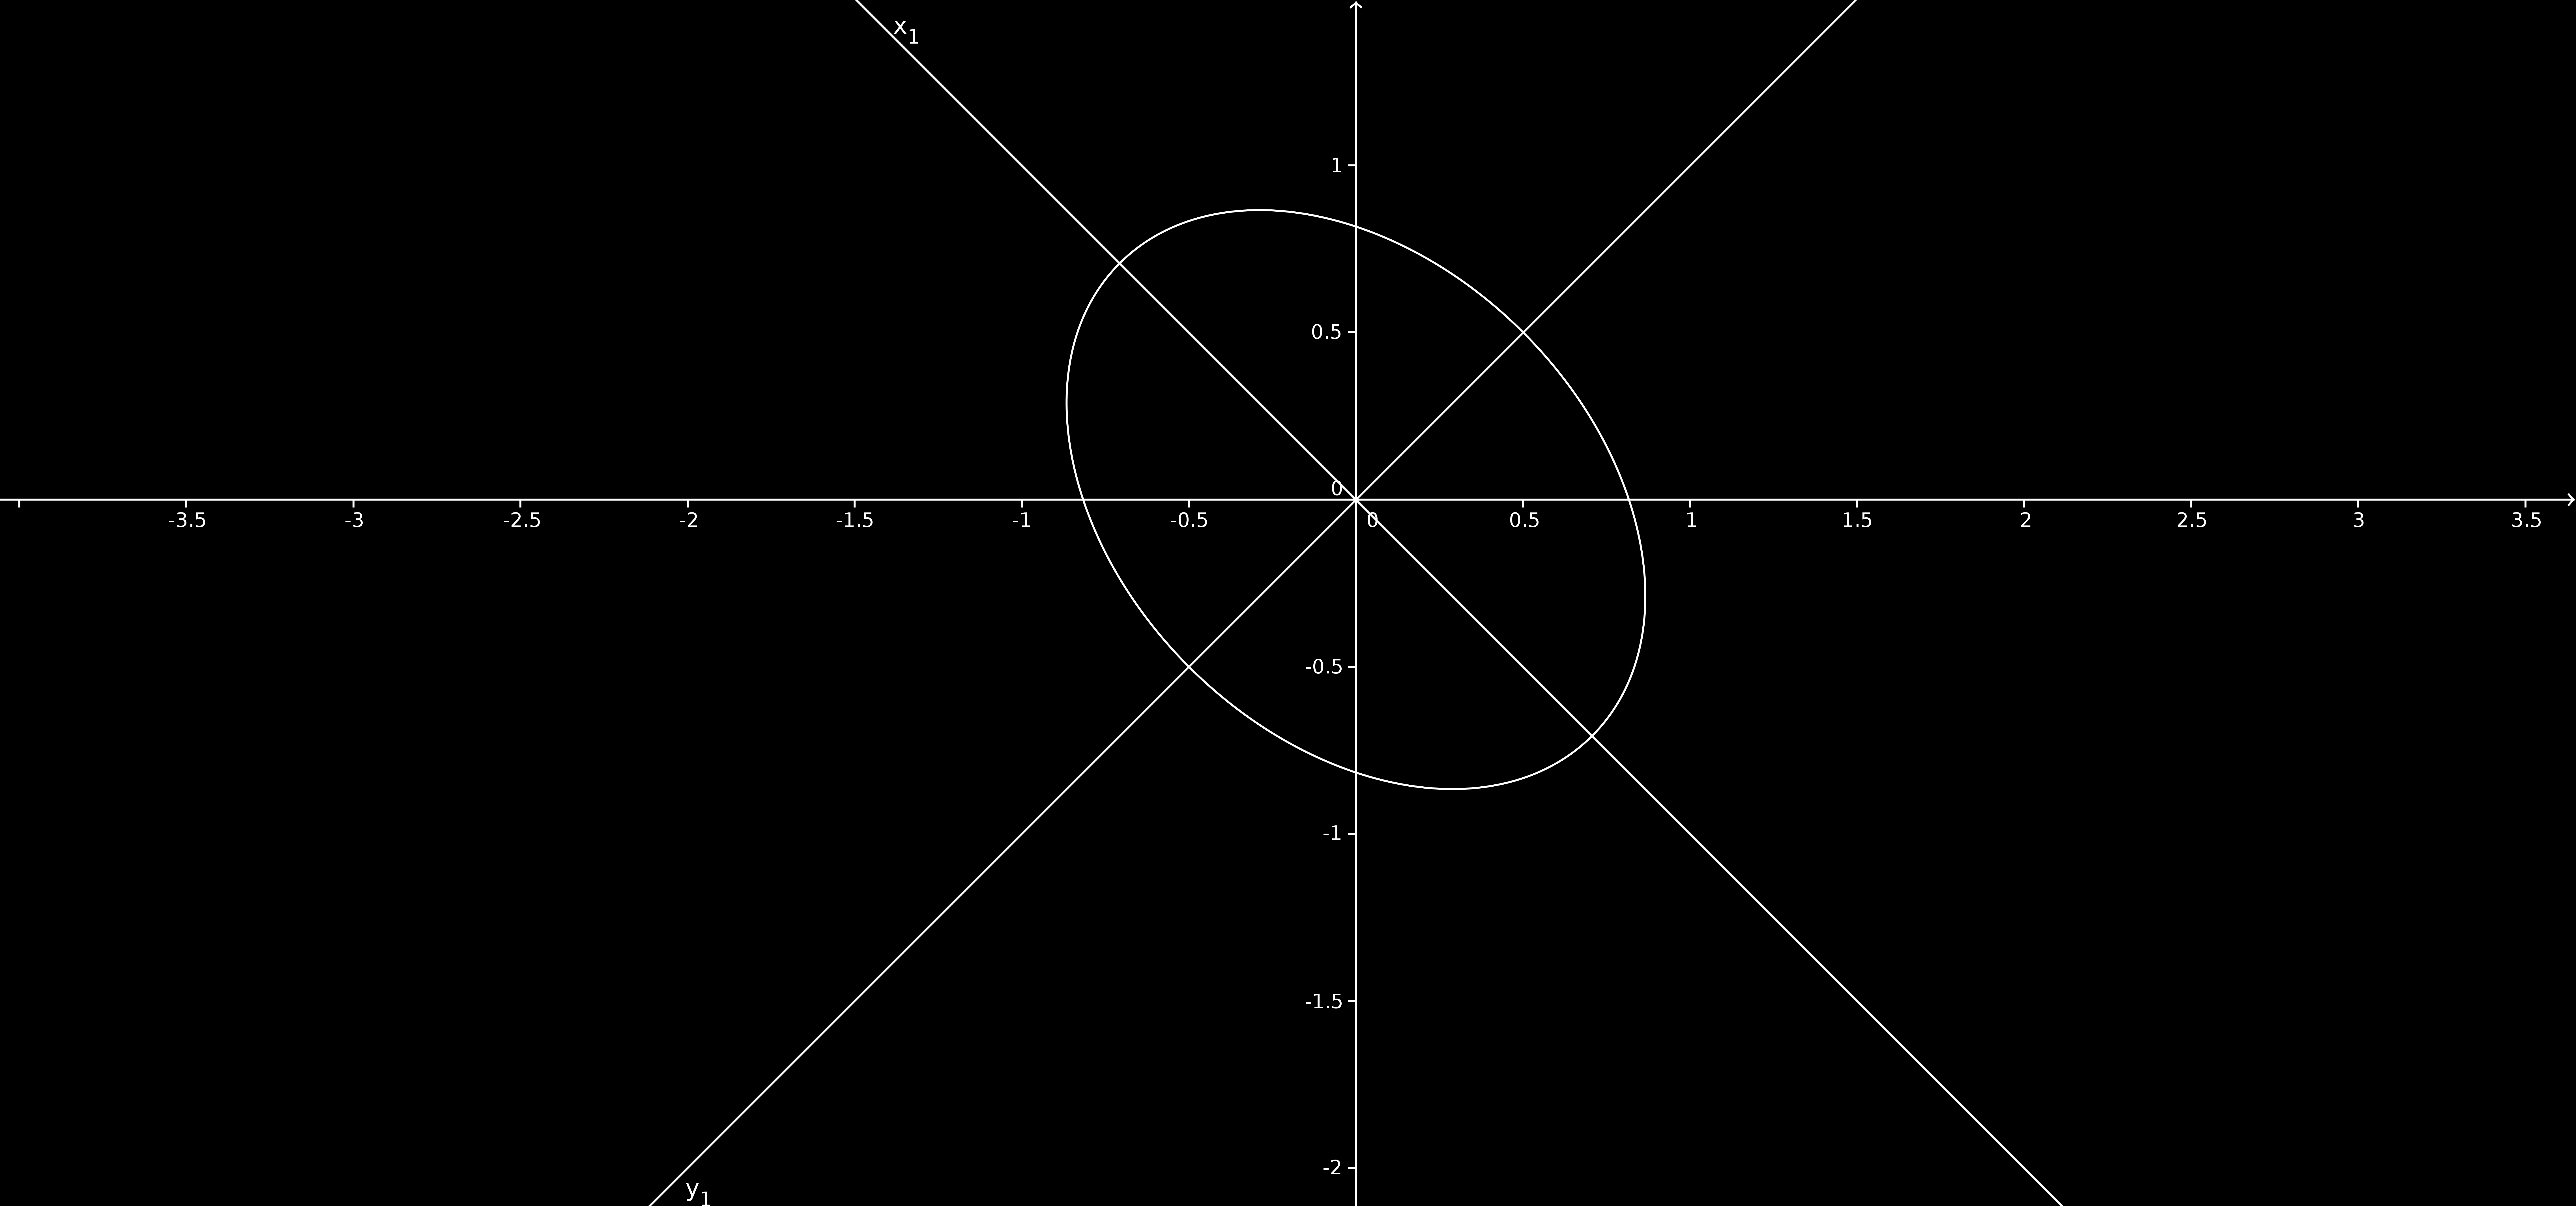 40 1. O PLANO FIGURA 13. A elipse 2x 2 + 2xy + 3y 2 = 2. A figura 13 ilustra esta elipse, juntamente com o sistema de eixos x 1 e y 1. Exercícios 1. Sejam u e v vetores do plano.